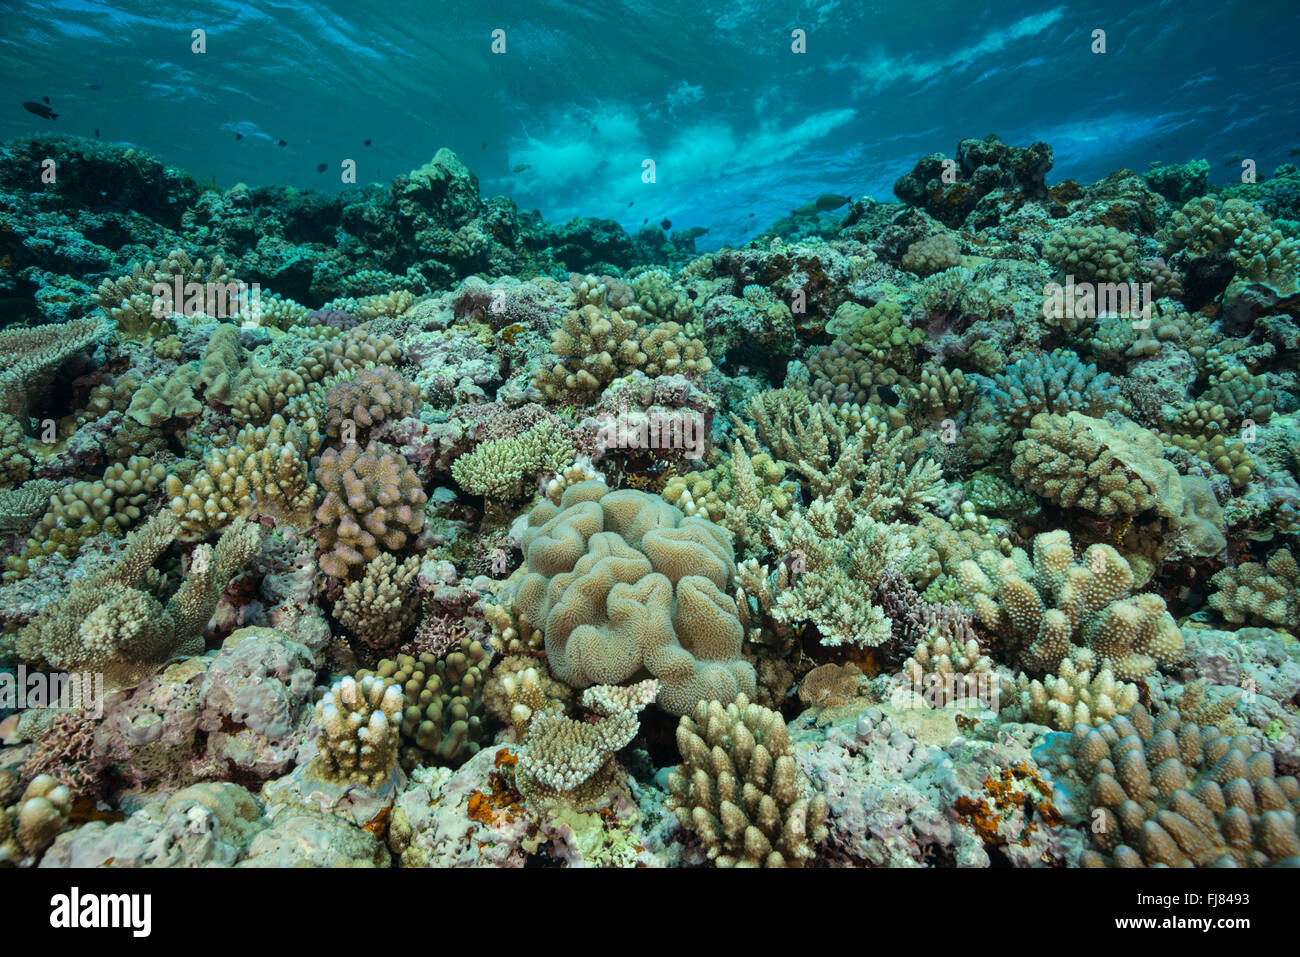 Arrecifes de coral sanos en la Gran Barrera de Coral. Foto de stock